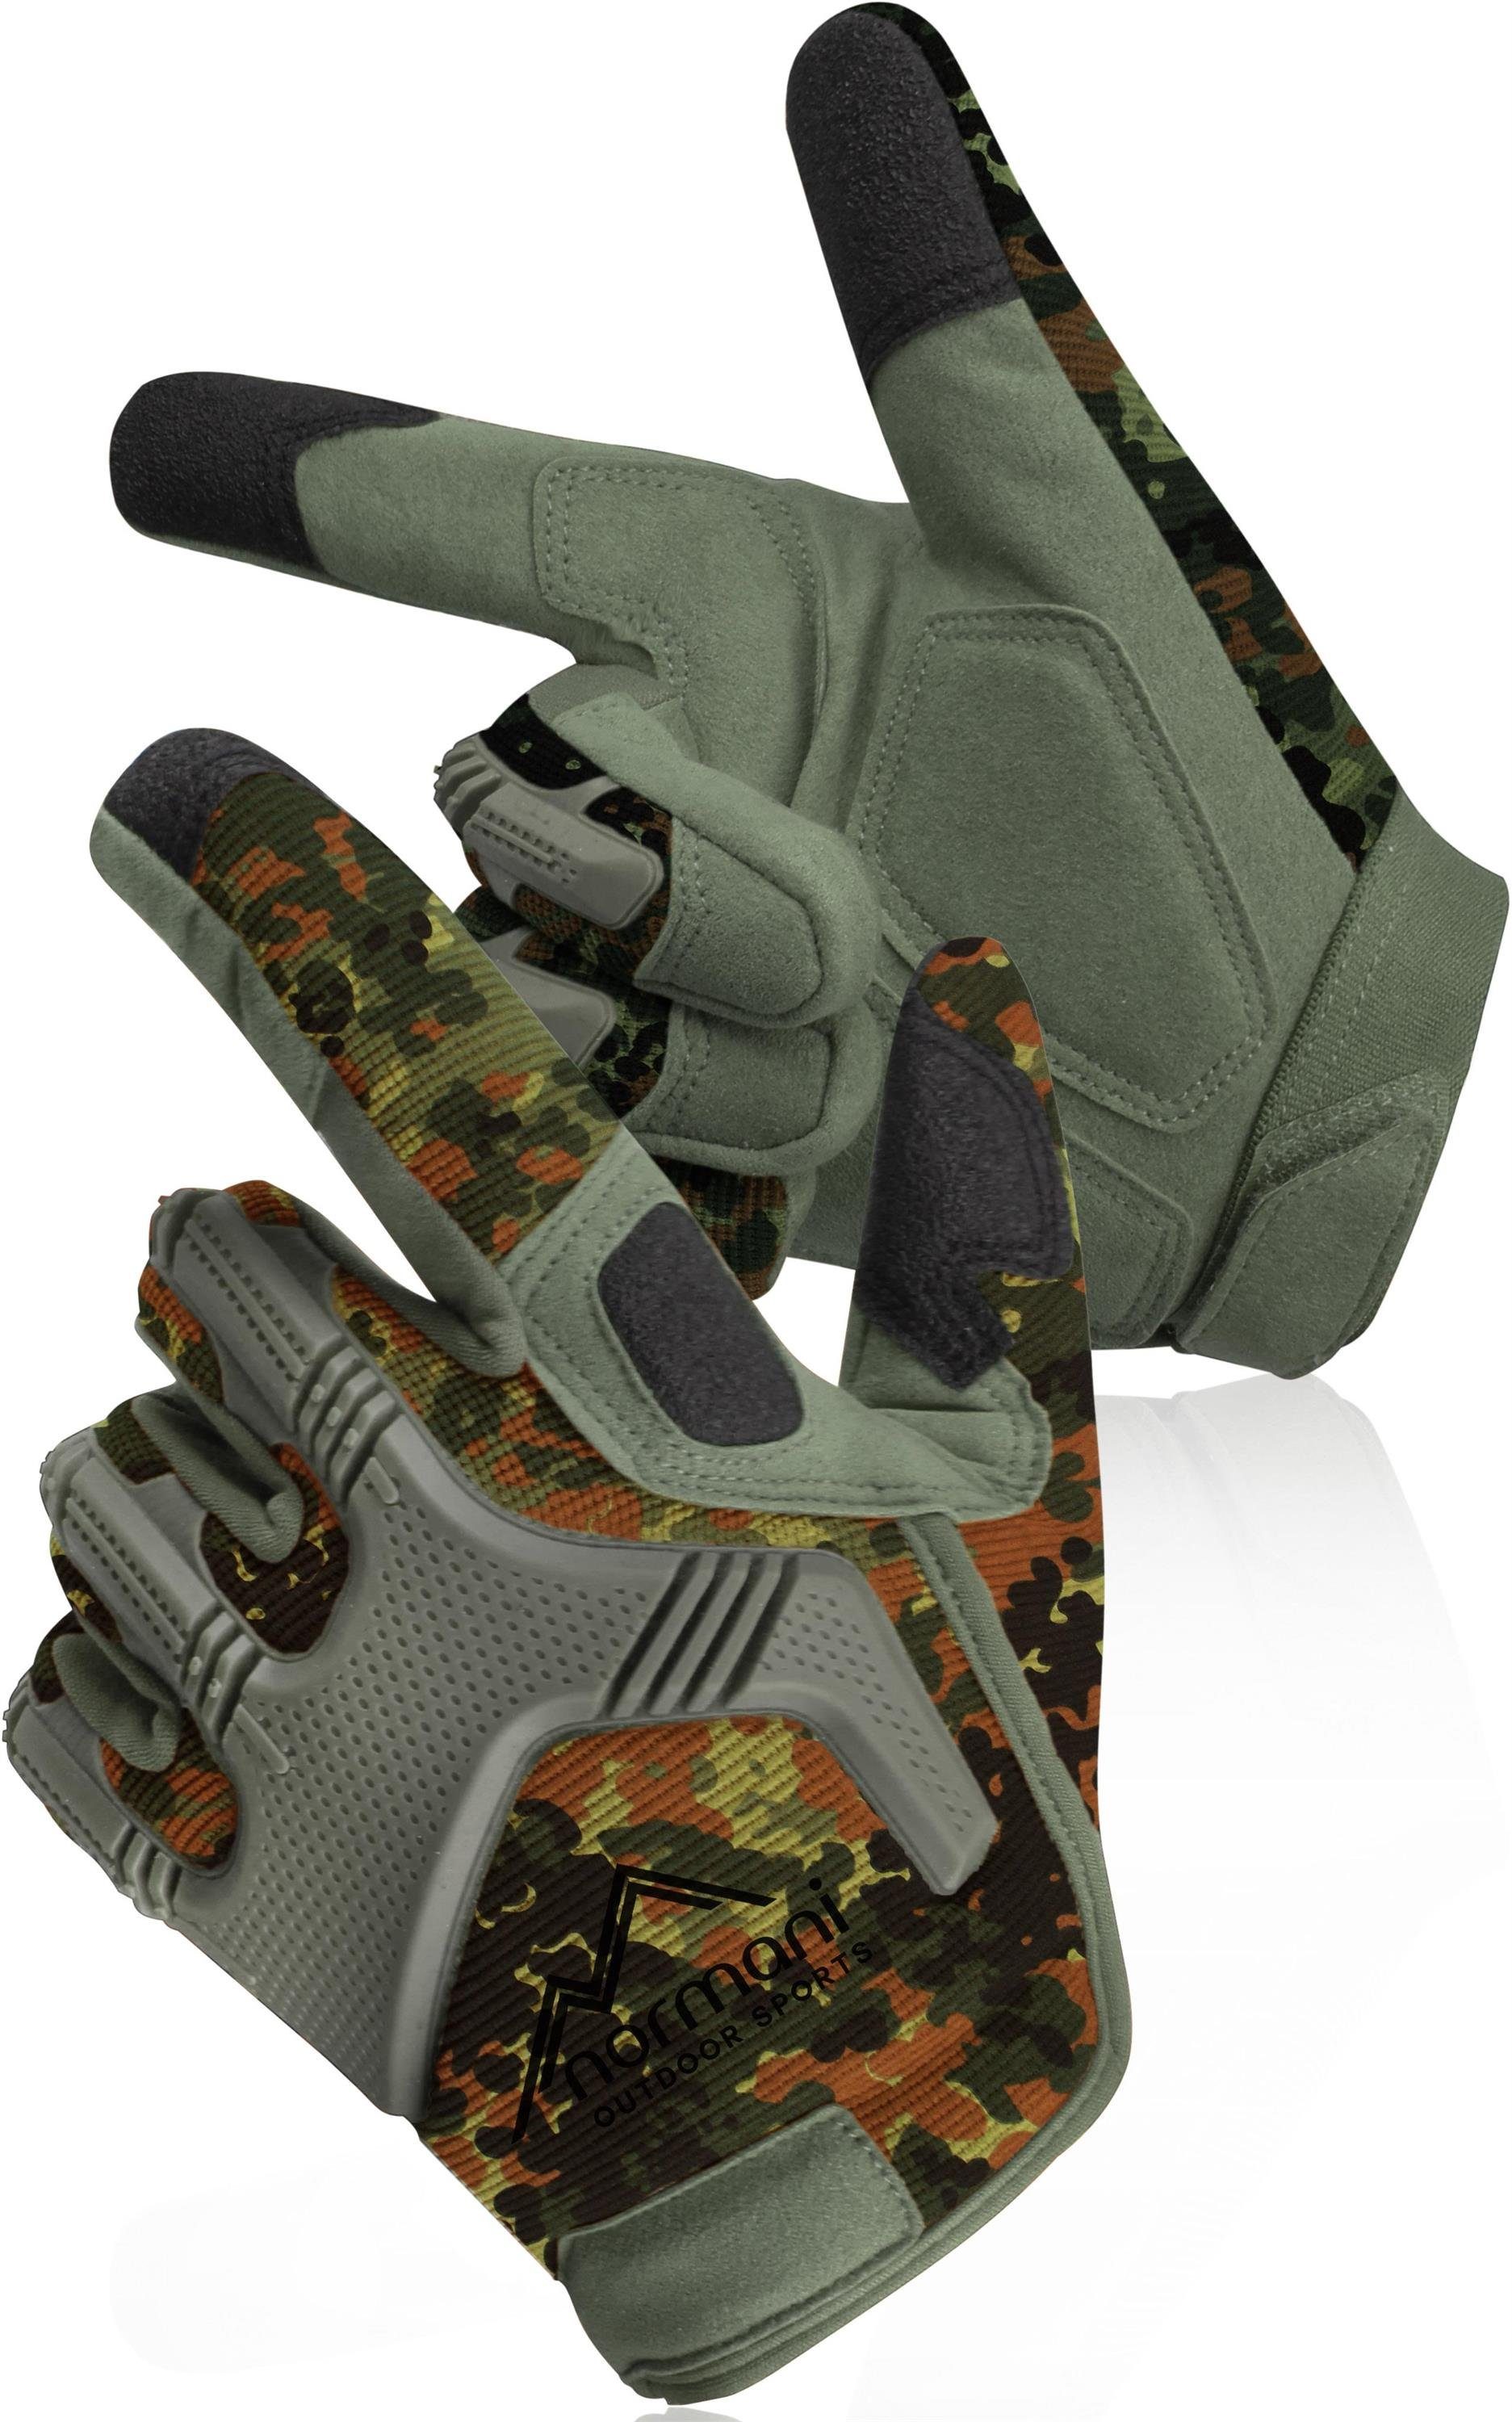 normani Multisporthandschuhe Fingerhandschuhe Taktische Specialist ARMY Outdoor Einsatzhandschuhe Motorrad Flecktarn GLOVES Militärische Sporthandschuhe Paintballhandschuhe Handschuhe